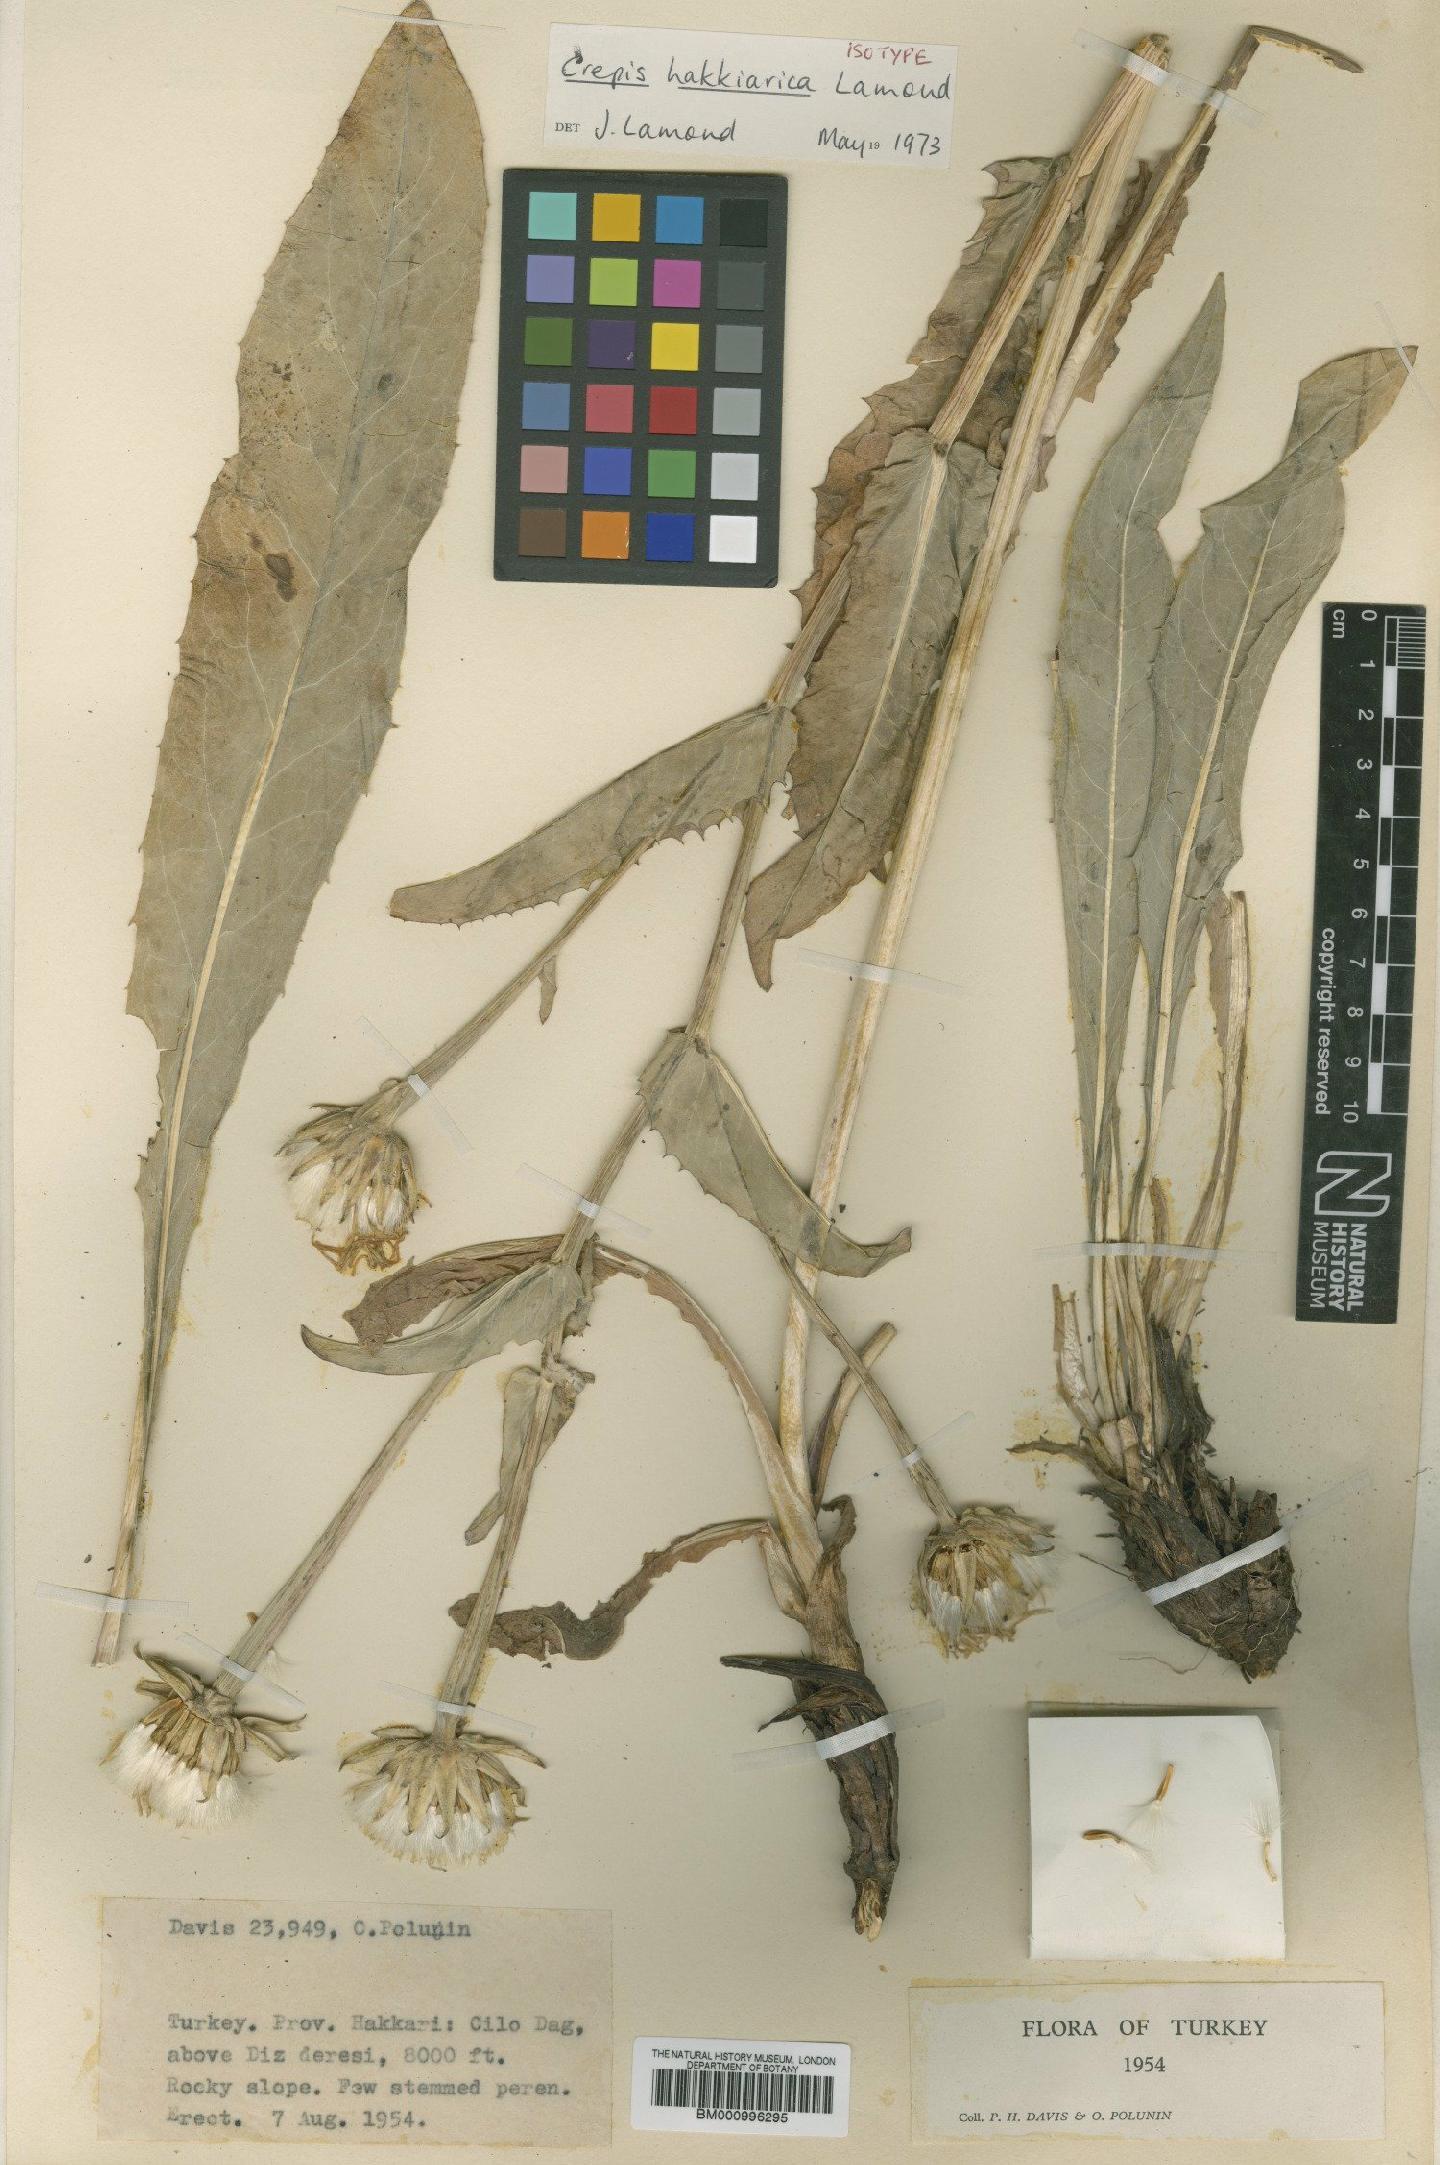 To NHMUK collection (Crepis hakkarica Lamond; Type; NHMUK:ecatalogue:481461)